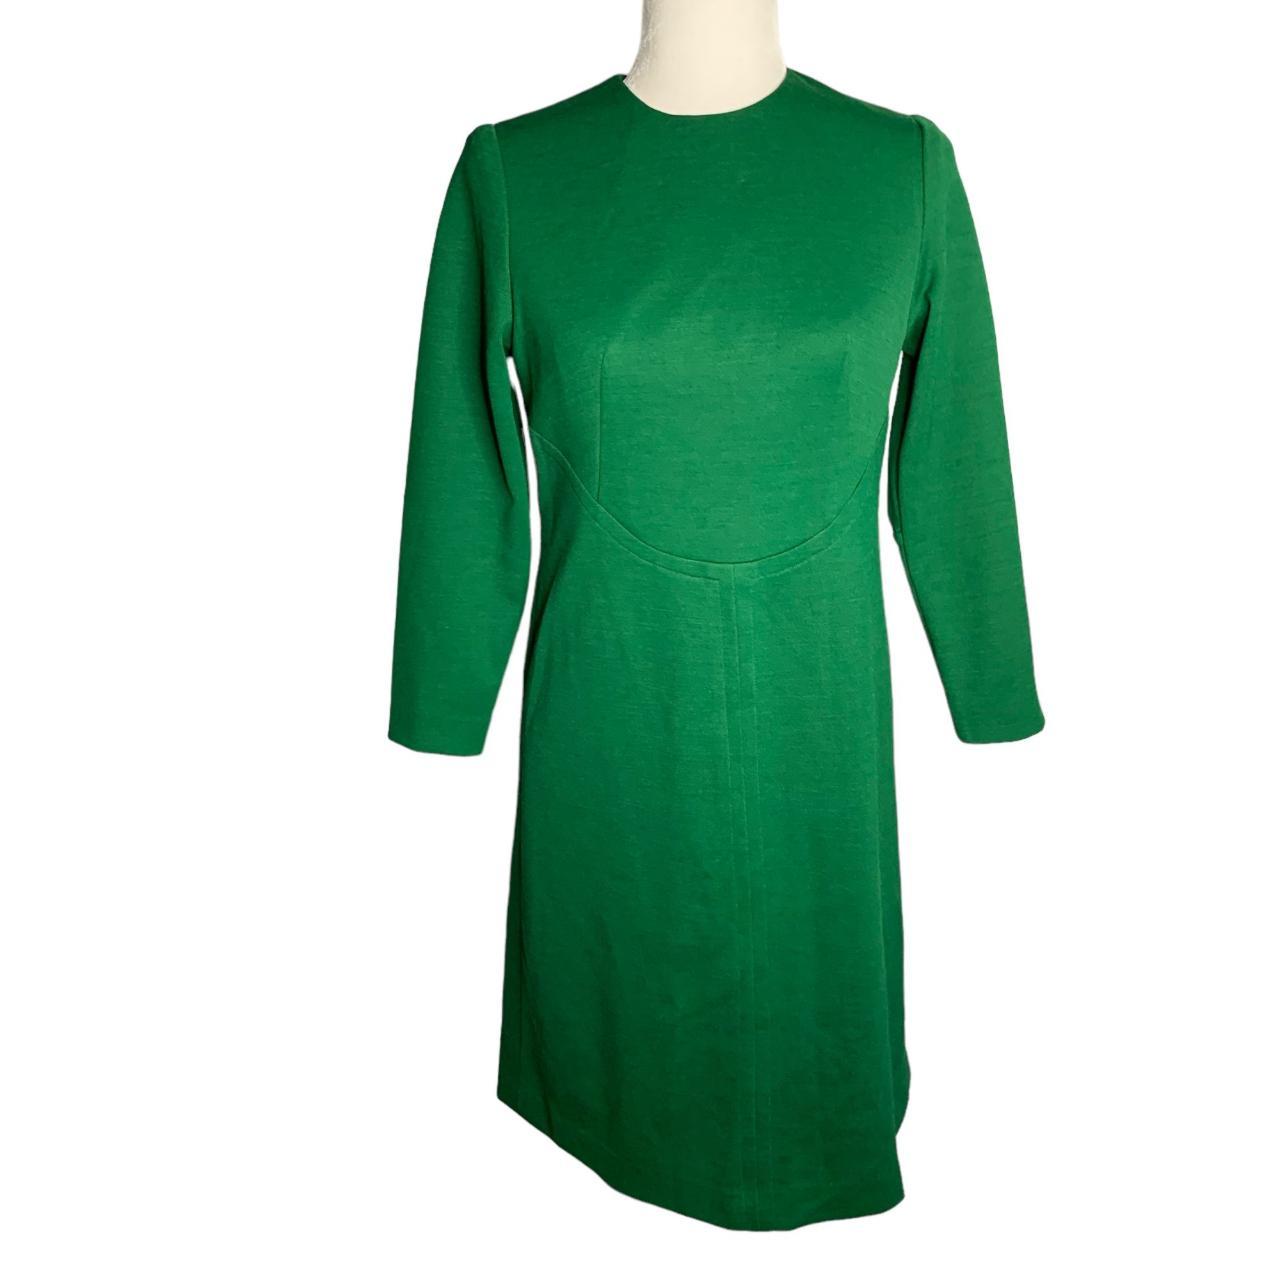 Vintage 60s Stretch Knit Mod Shift Dress S Green... - Depop